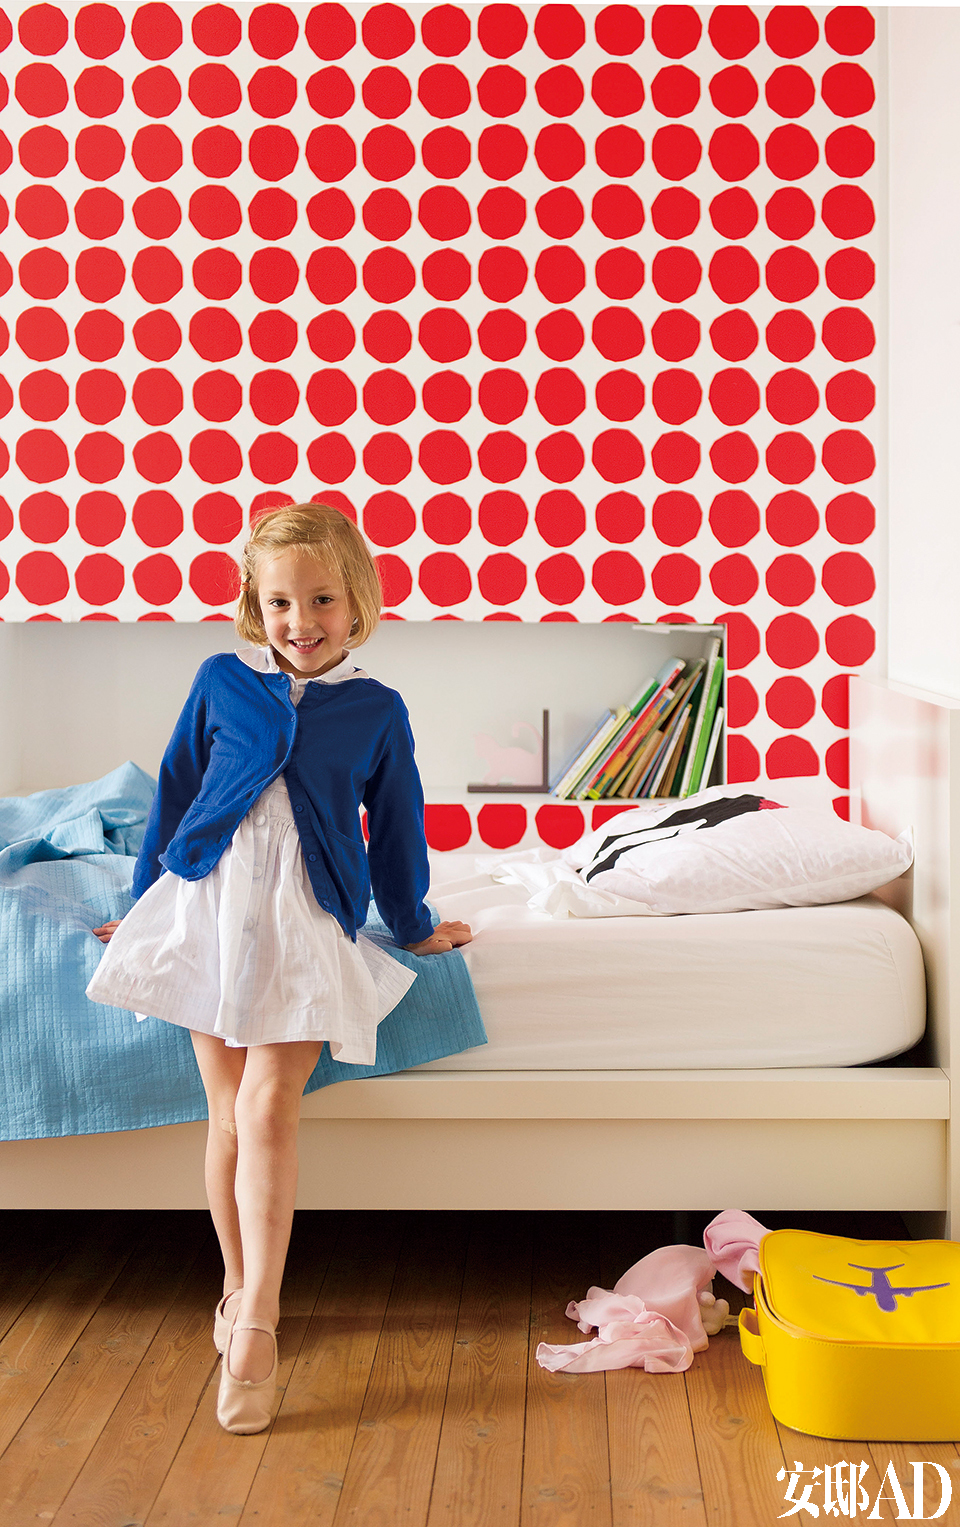 6岁Julia 的房间用了红色波点壁纸，整体感觉活泼俏皮。I s o t  K i v e t 红色波点壁纸来自Marimekko，床来自宜家家居。